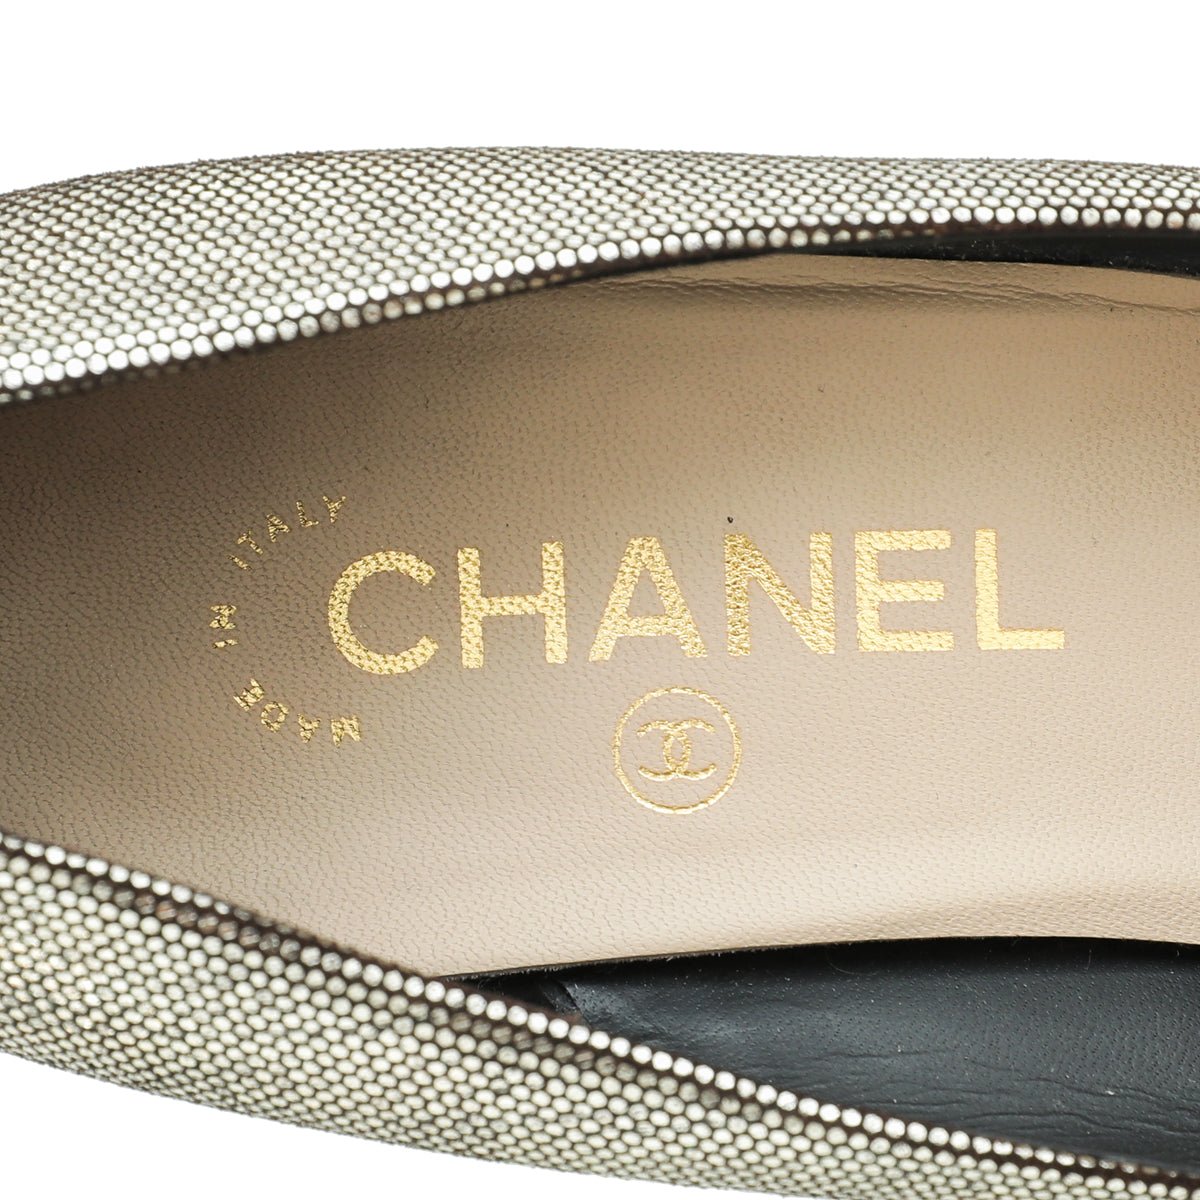 Chanel - Chanel Bicolor Cap Toe CC Pumps 40.5 | The Closet